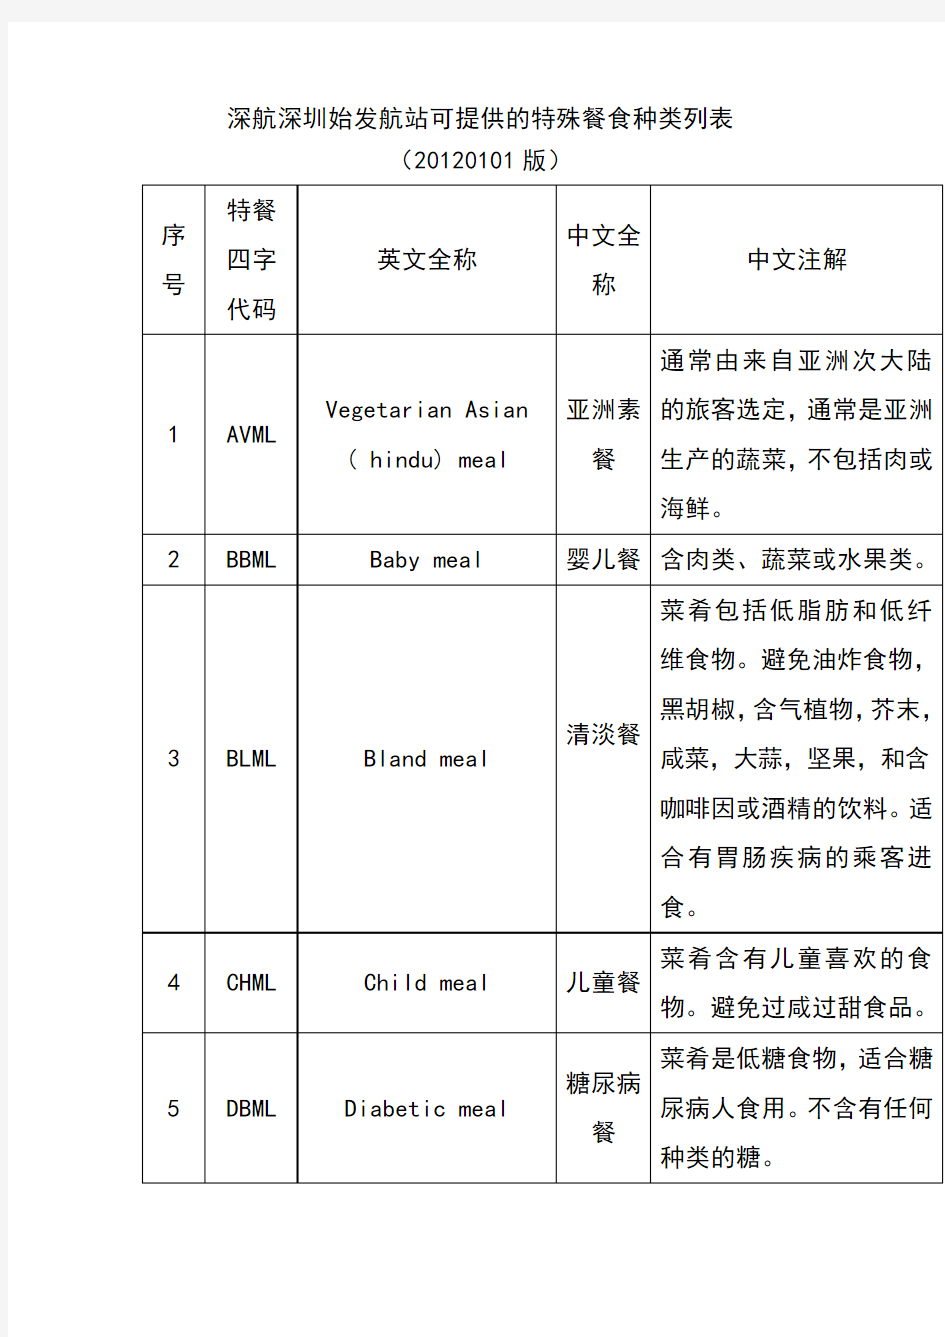 深航深圳始发航站可提供的特殊餐食种类列表